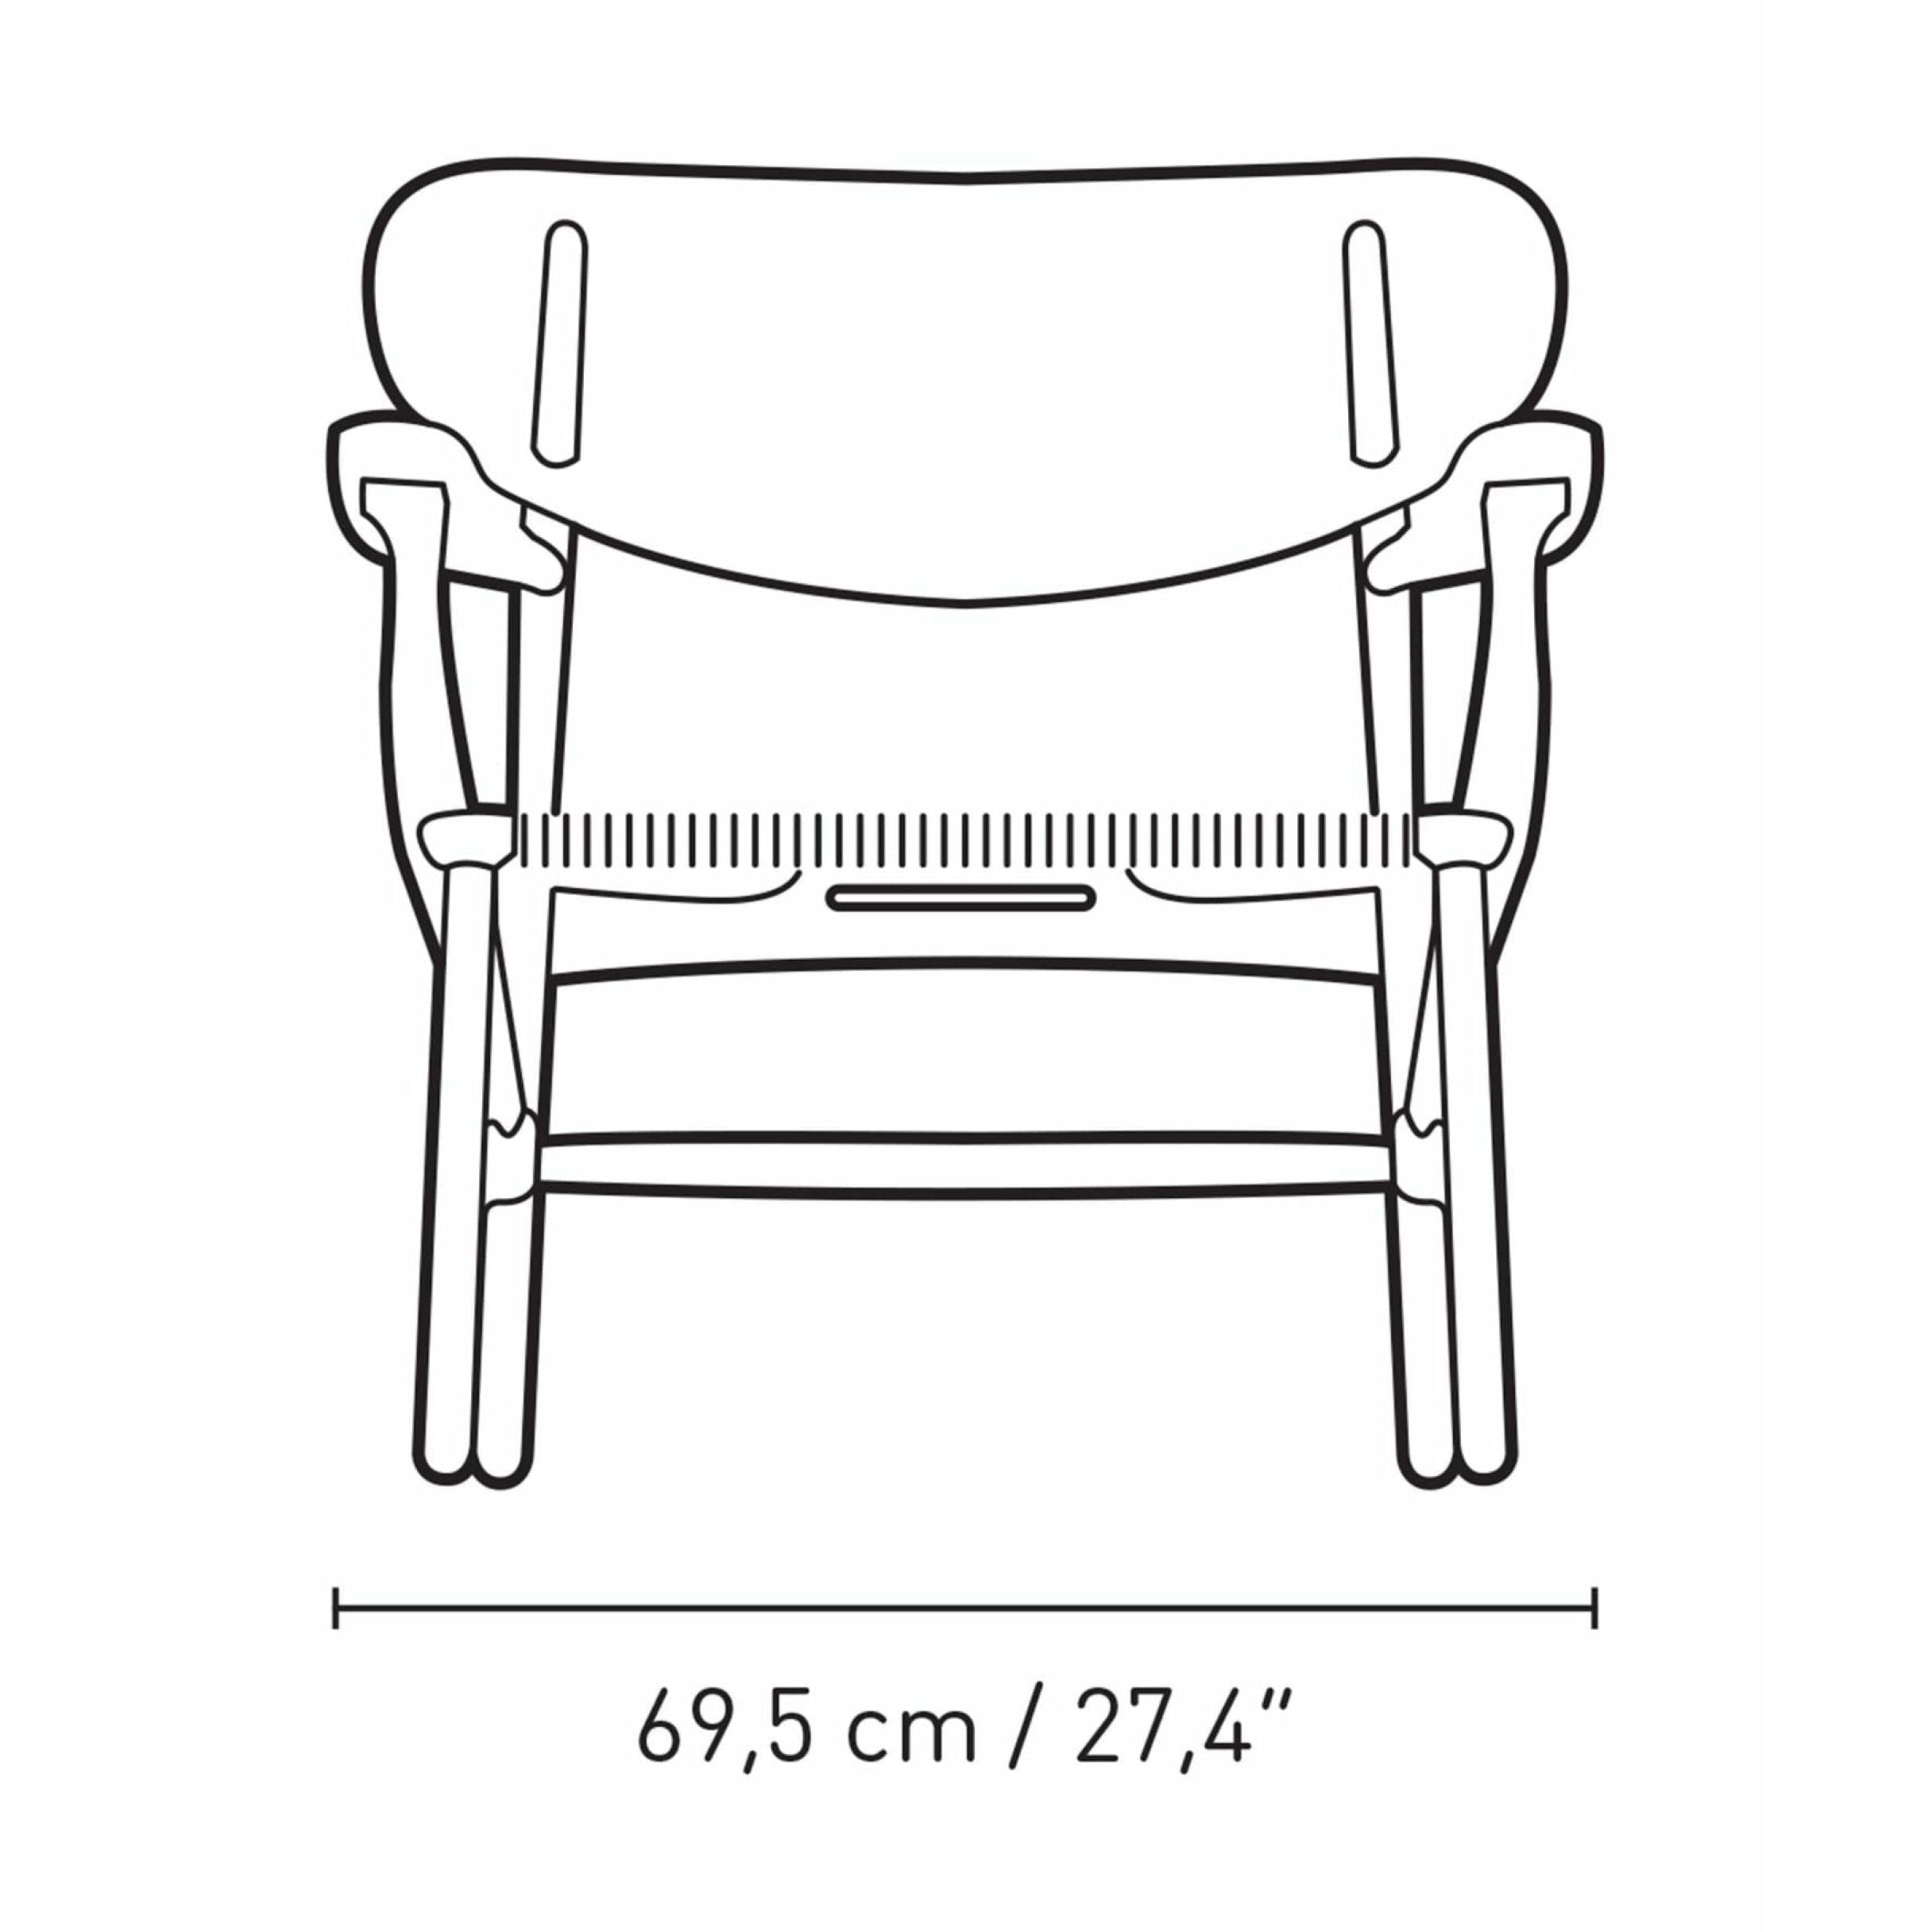 Carl Hansen Ch22 Lounge Chair Oak, North Sea Blue/Natural Cord